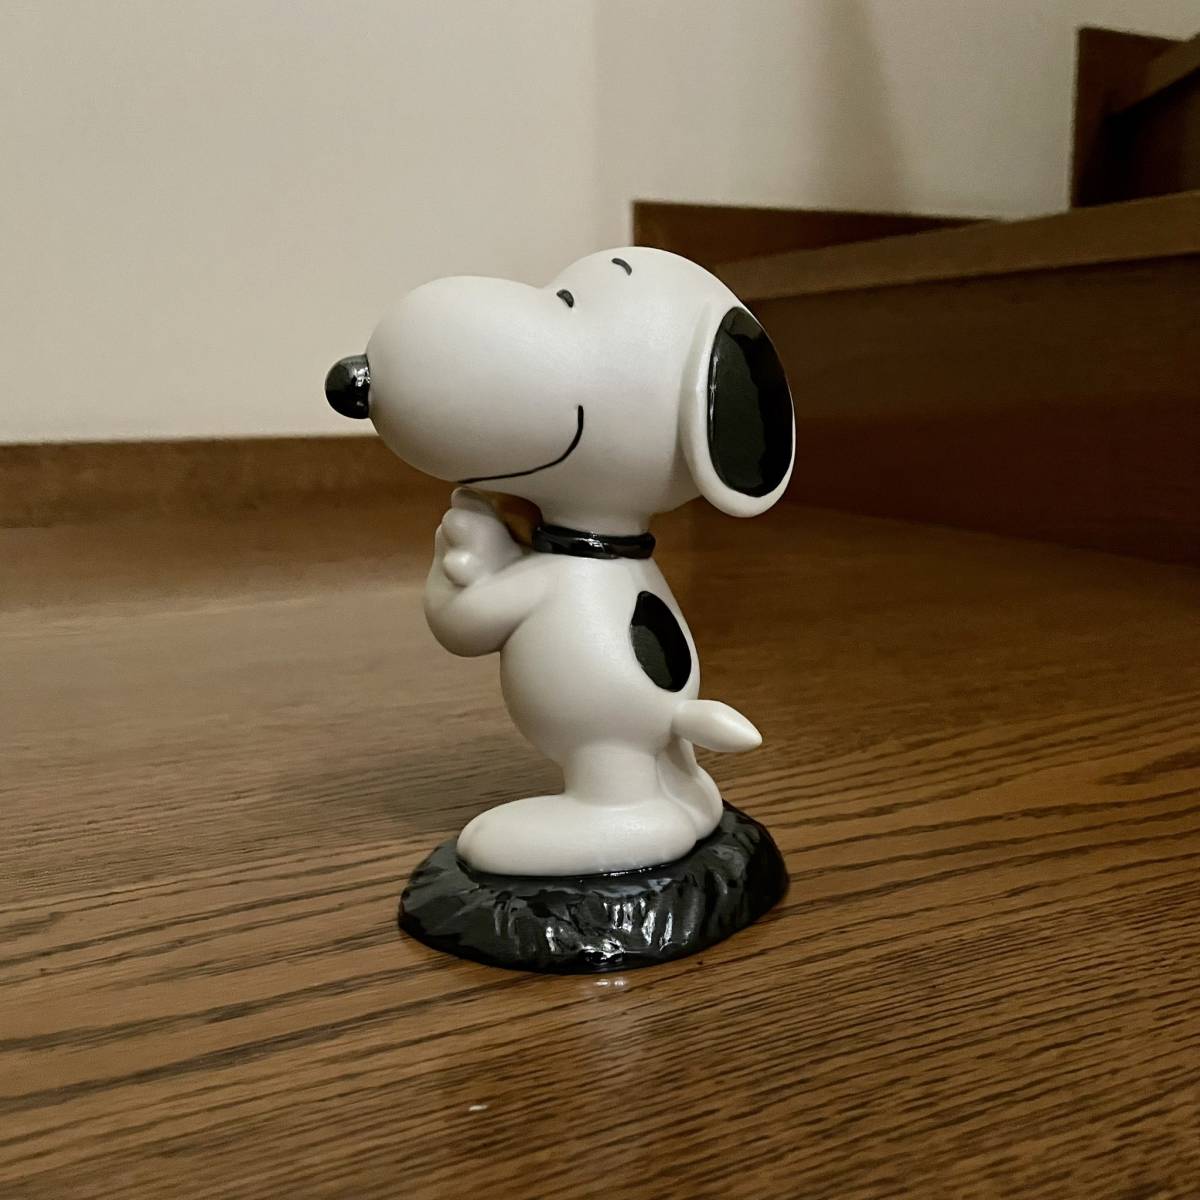  стандартный товар трудно найти Lladro новый товар LLADRO Snoopy SNOOPY подарок украшение орнамент интерьер 13x8x10cm